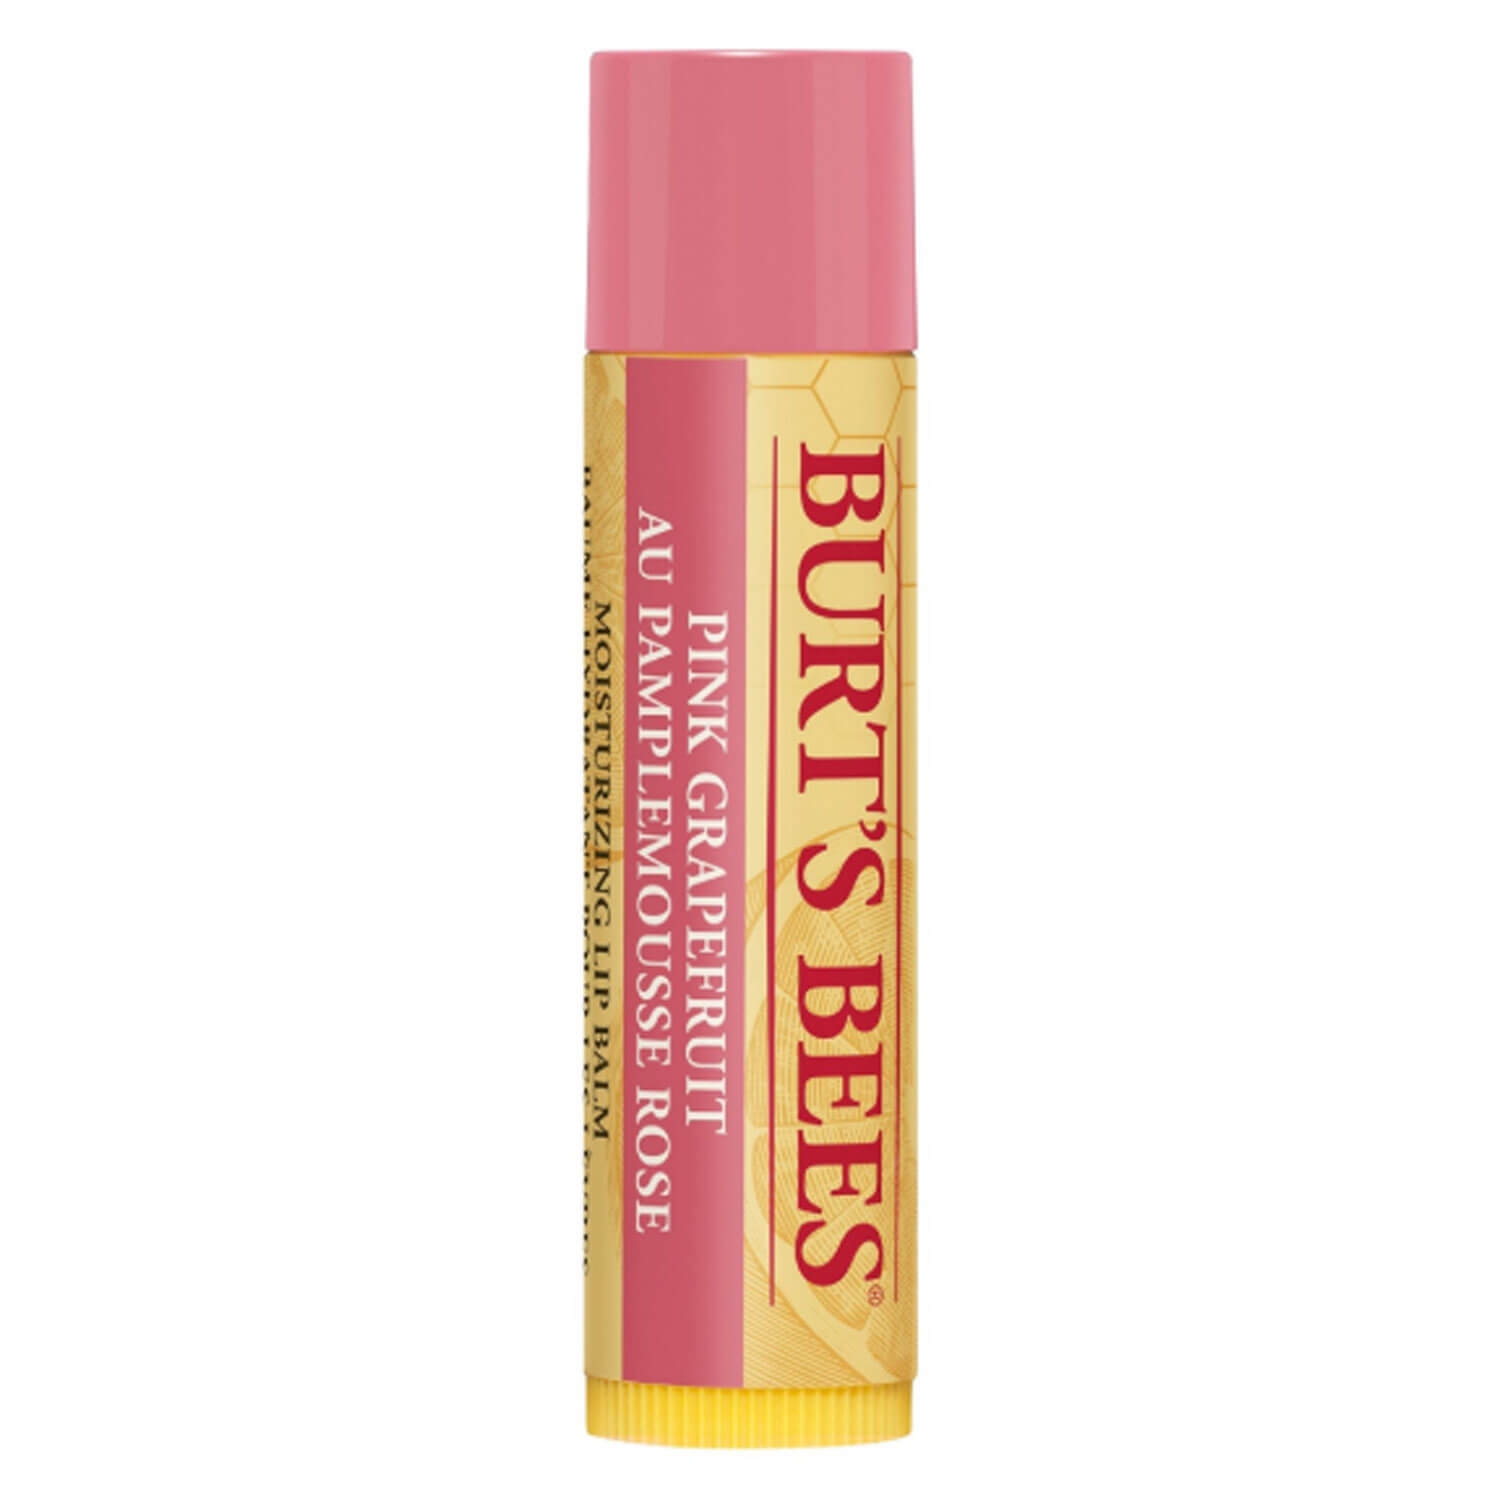 Produktbild von Burt's Bees - Lip Balm Pink Grapefruit